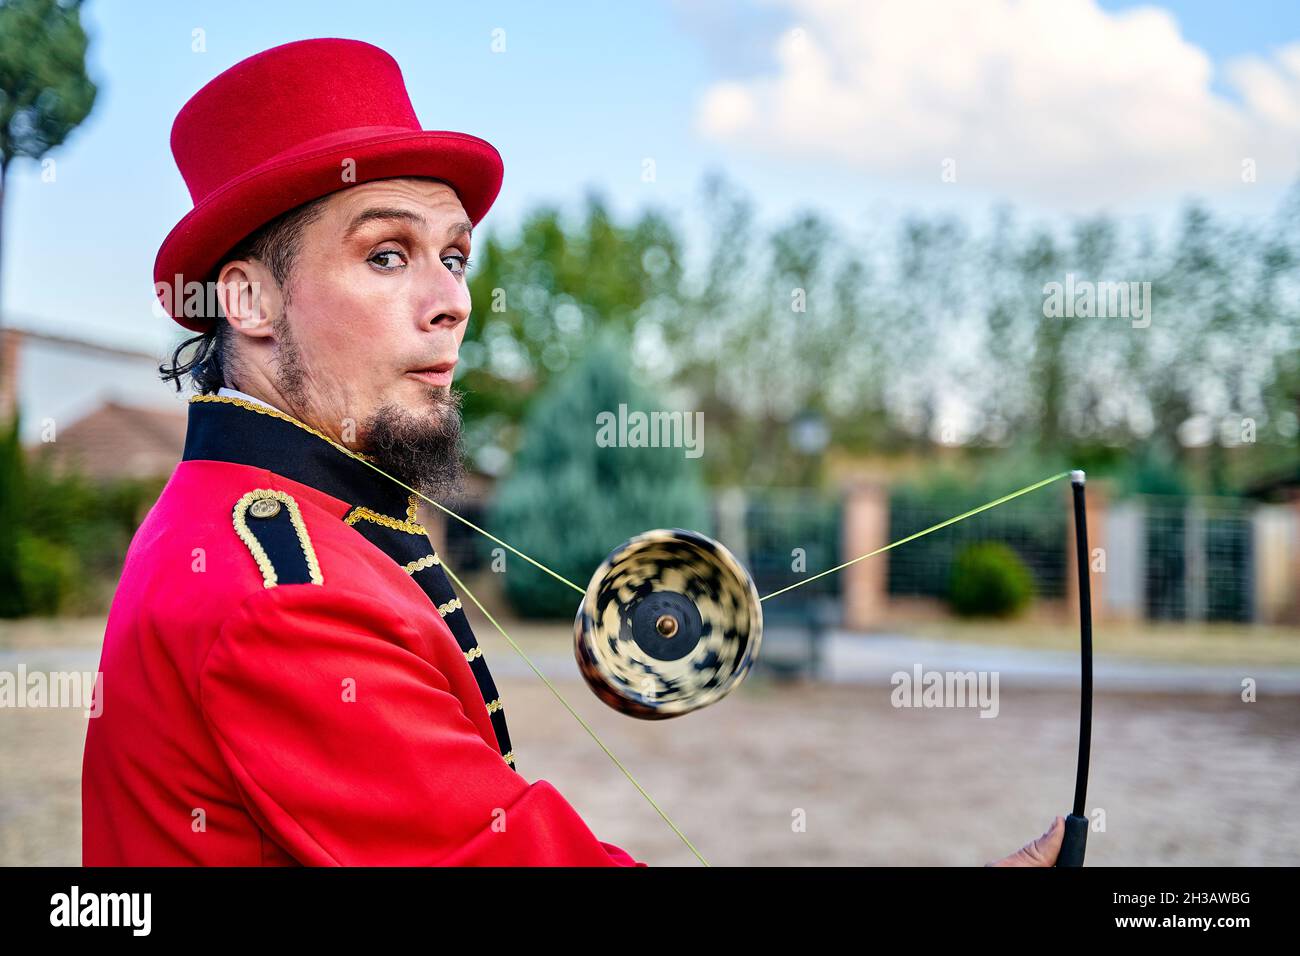 Seitenansicht eines exzentrischen bärtigen Mannes in rotem Kostüm und Hut, der mit Diabolo jongliert und die Kamera auf dem unscharfen Hintergrund des Parks anschaut Stockfoto